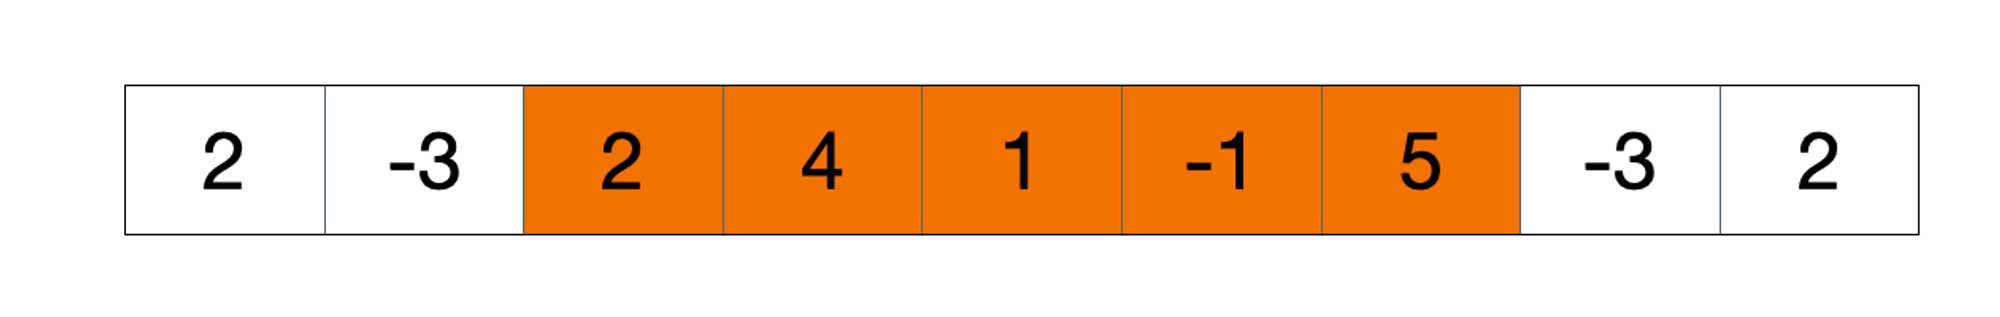 Maximum Subarray ( In Orange )